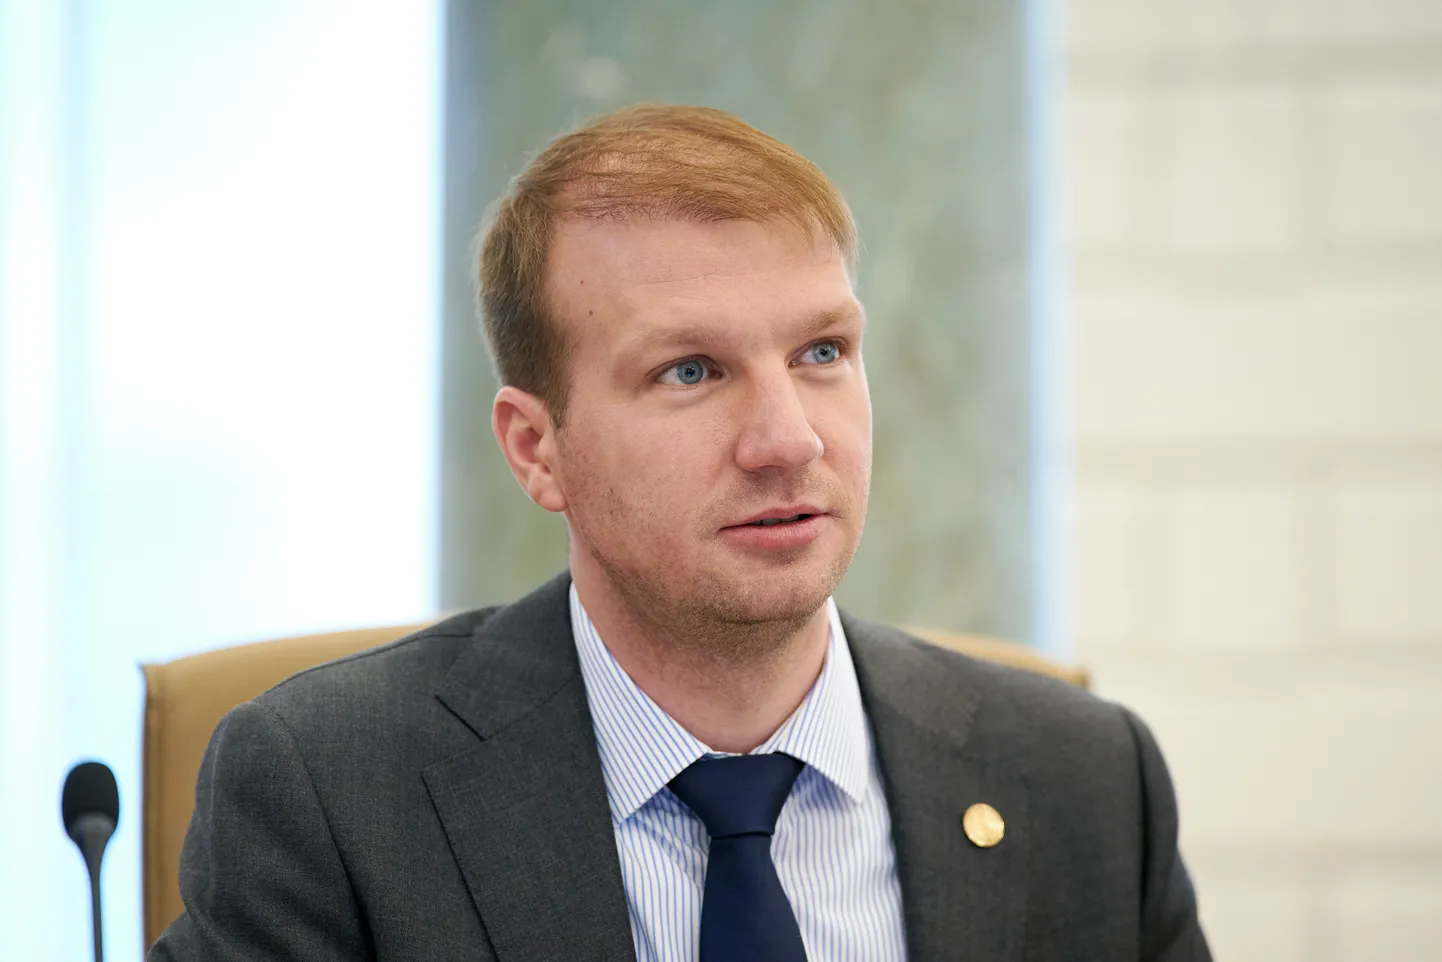 Klimata un enerģētikas ministrs Kaspars Melnis